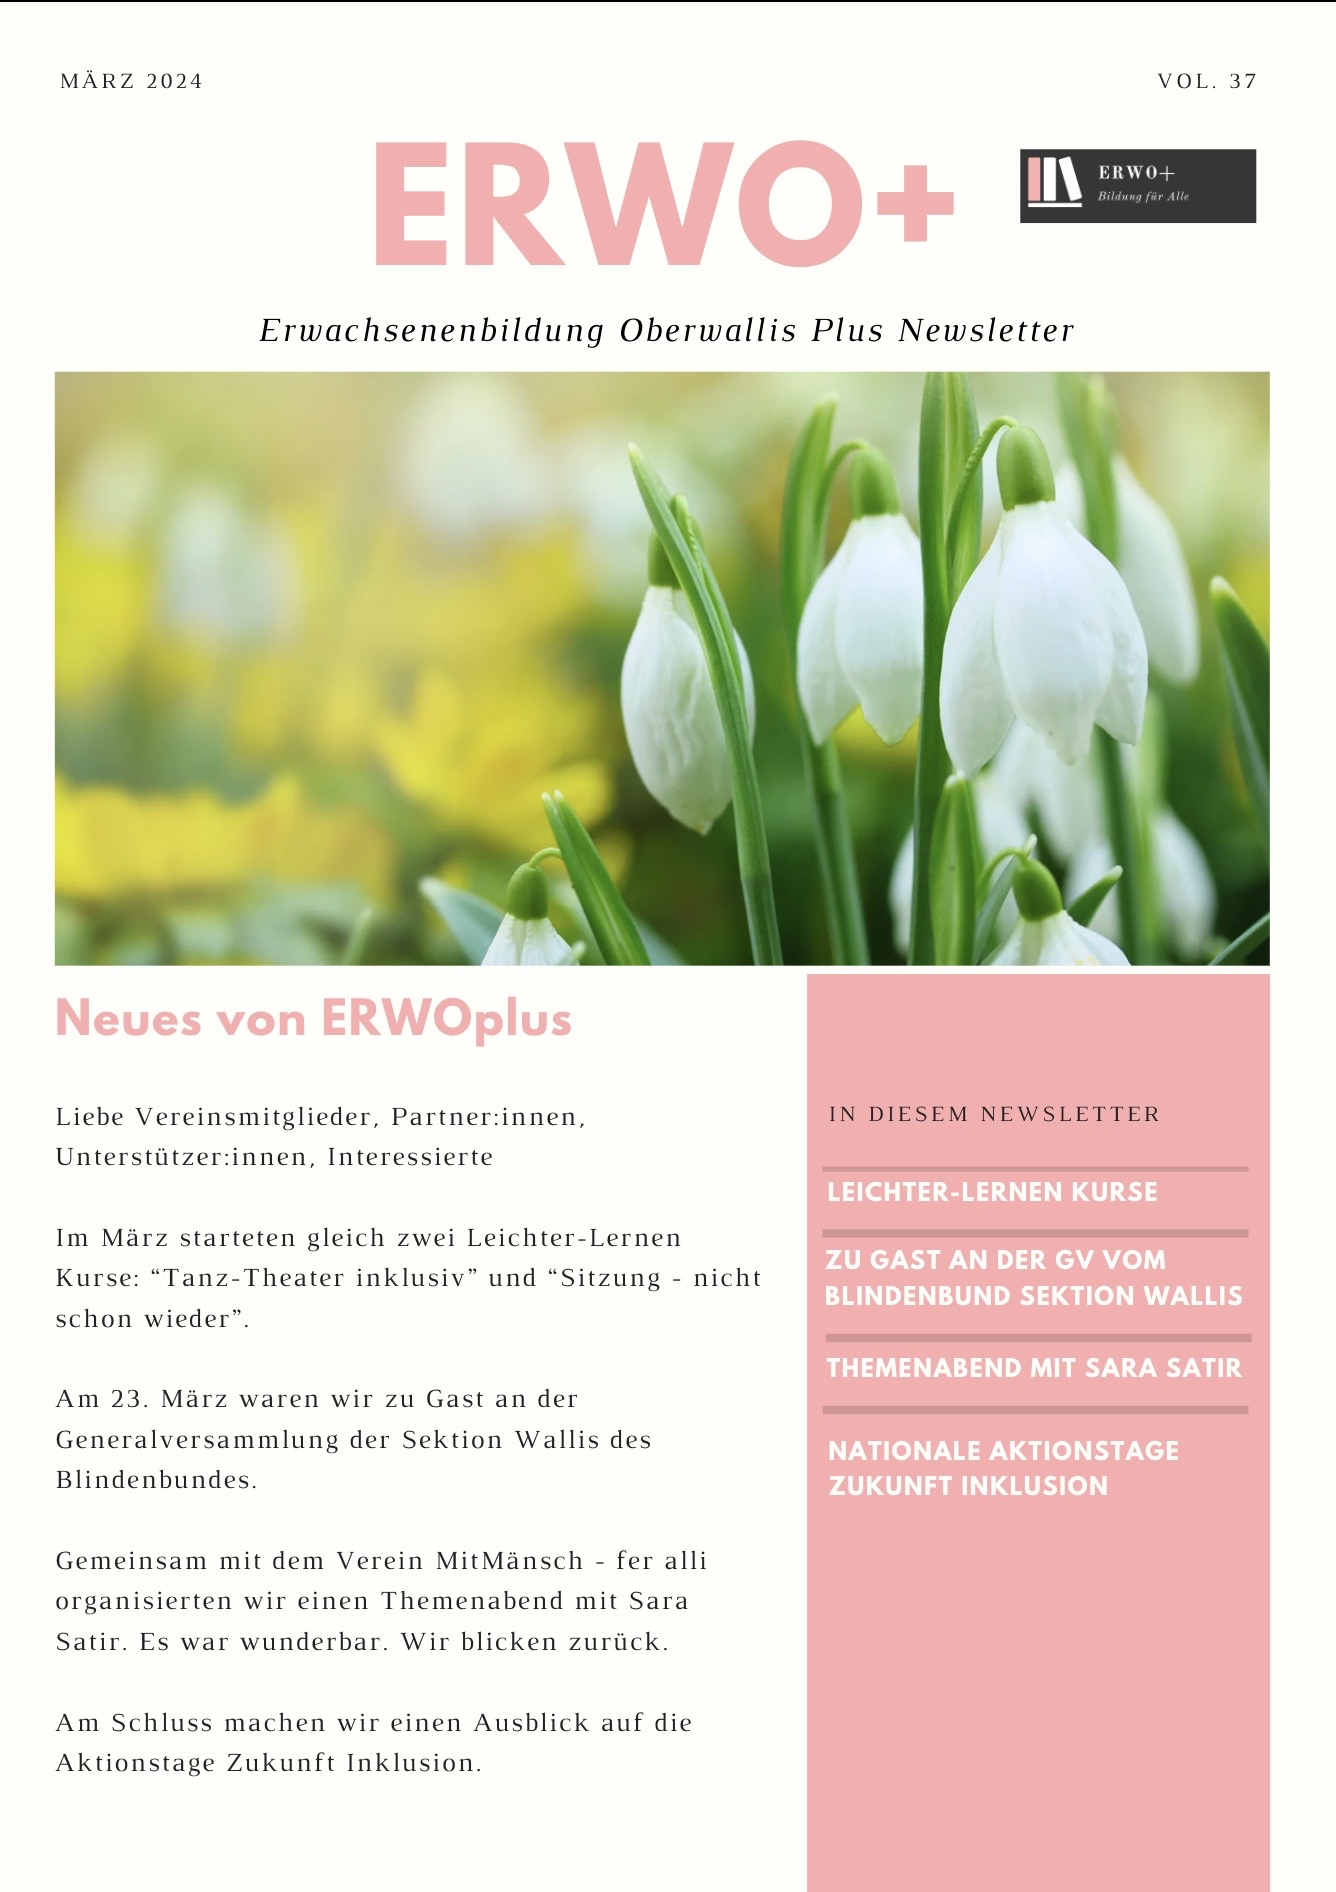 Das Bild zeigt das Cover vom Newsletter März 2024. Auf dem Bild sind weisse Tulpen zu sehen. Der Link führt zum PDF